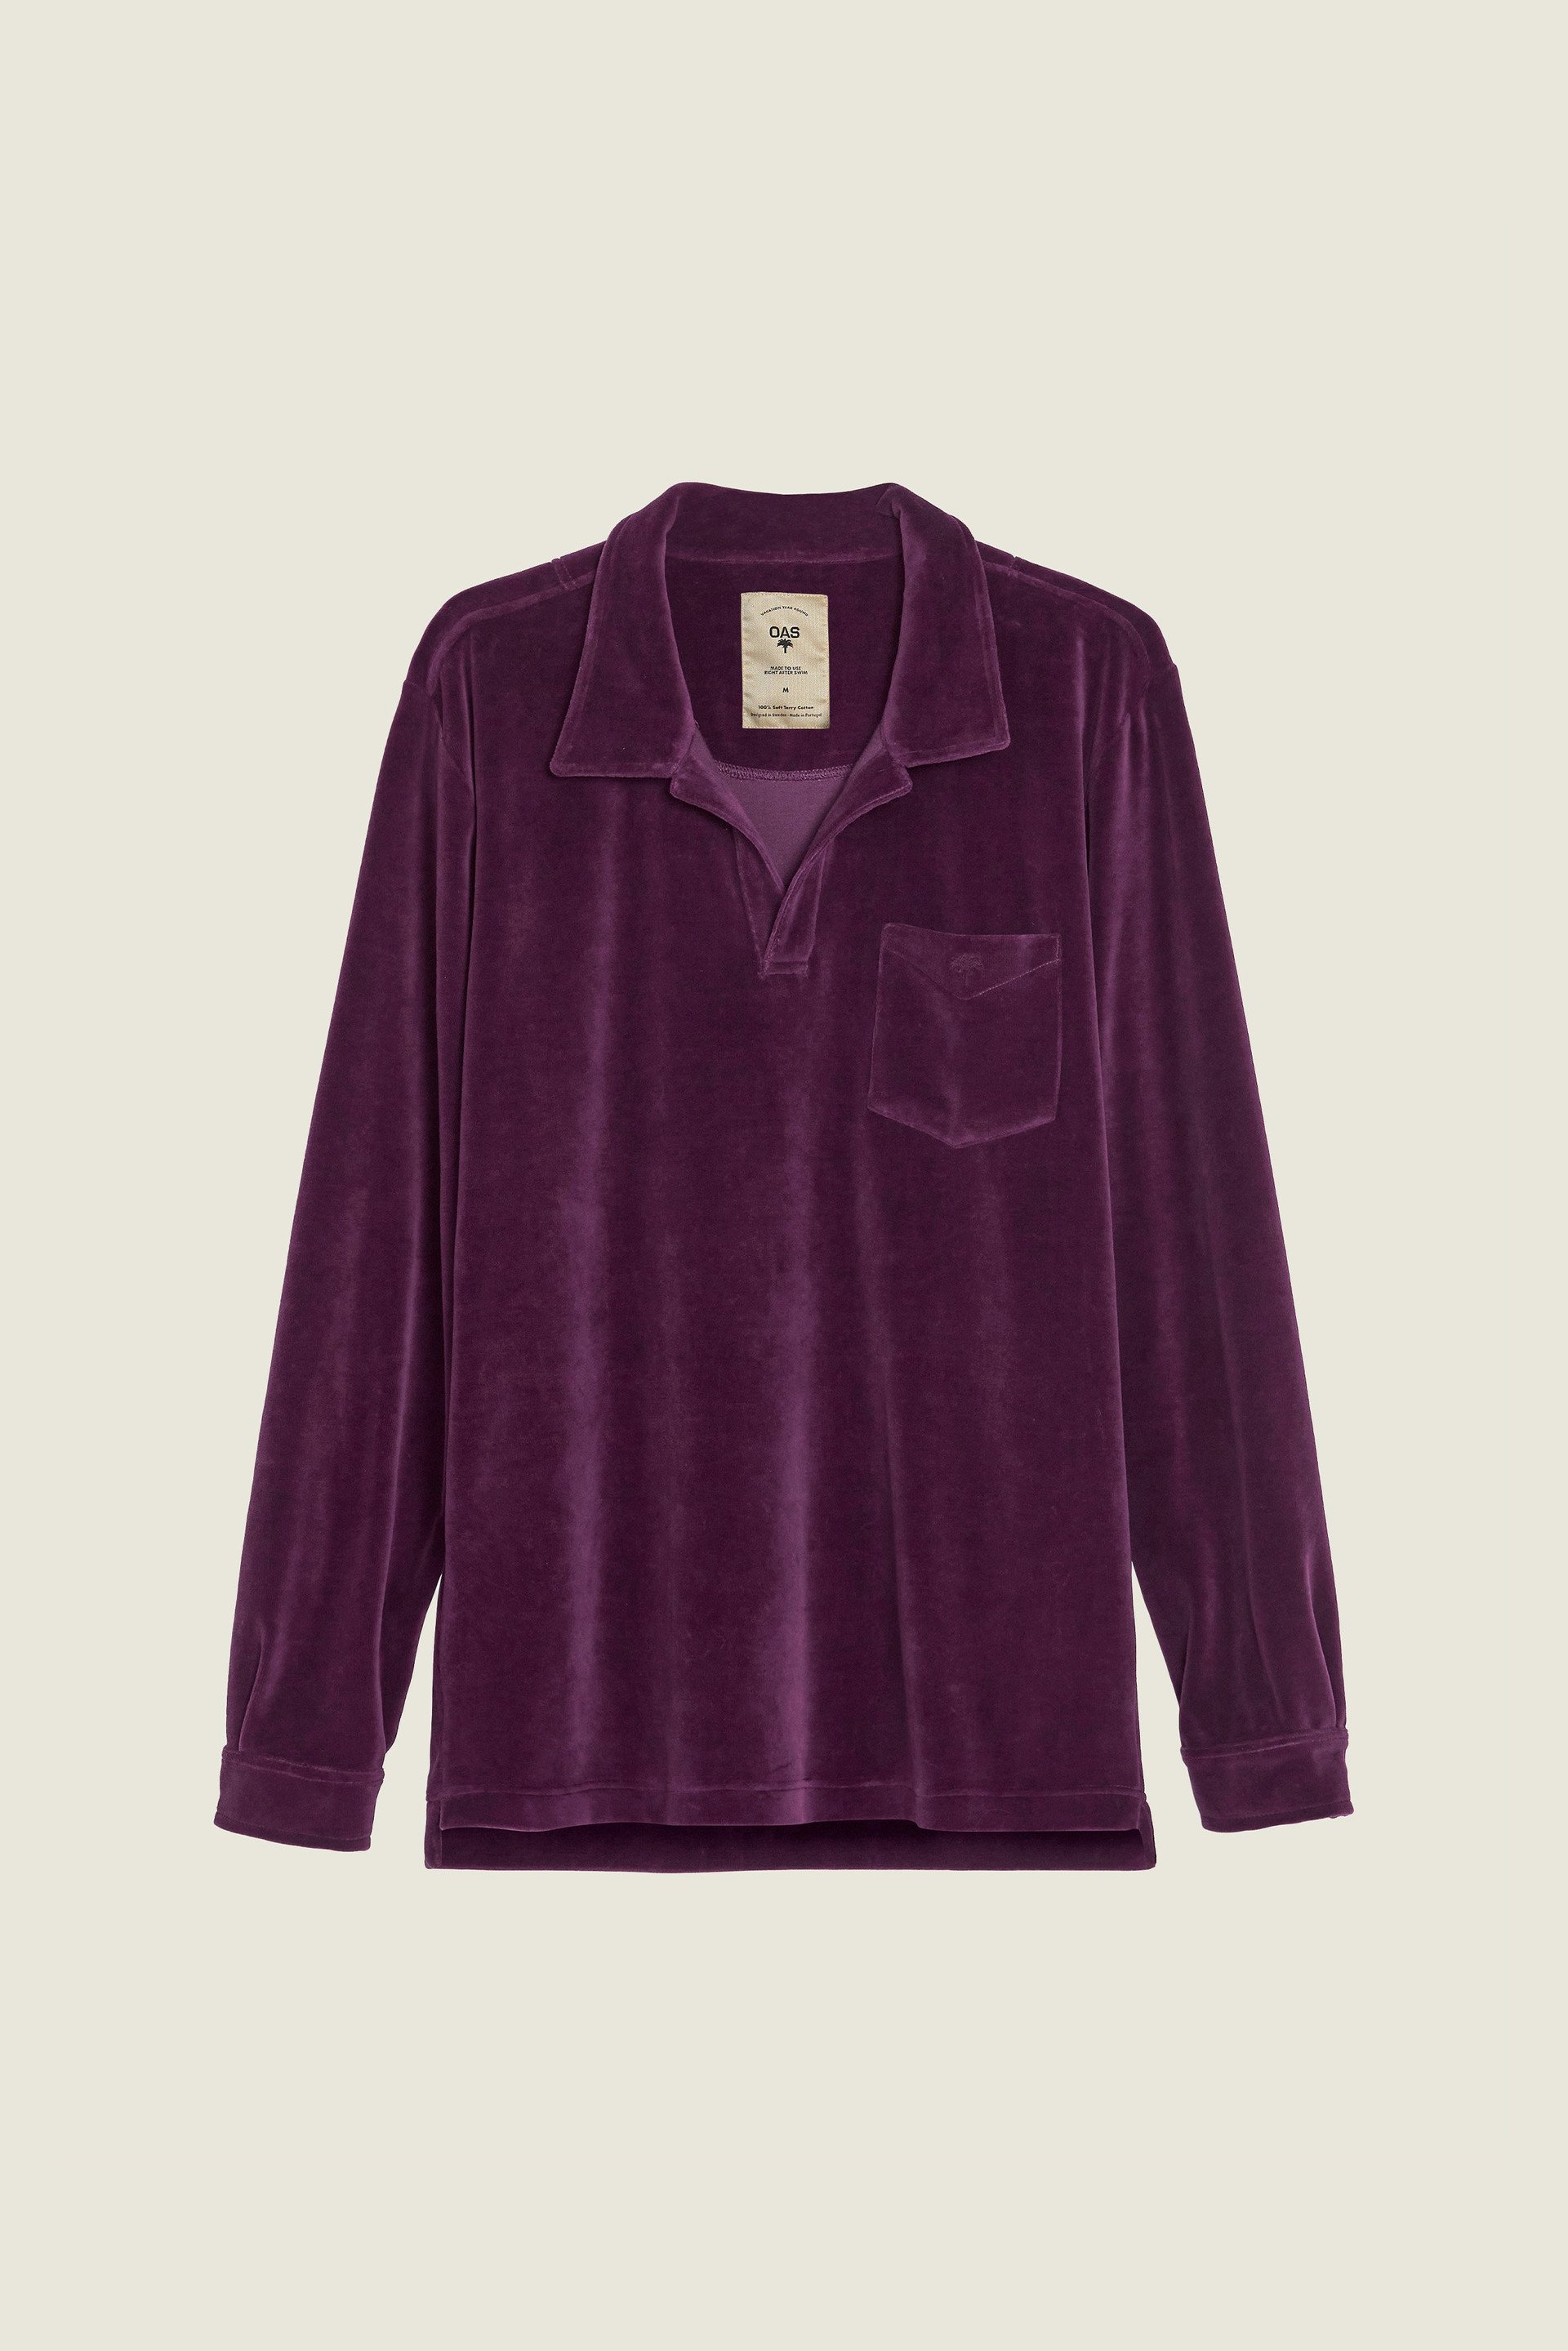 Dandy Purple Velour Long Sleeve